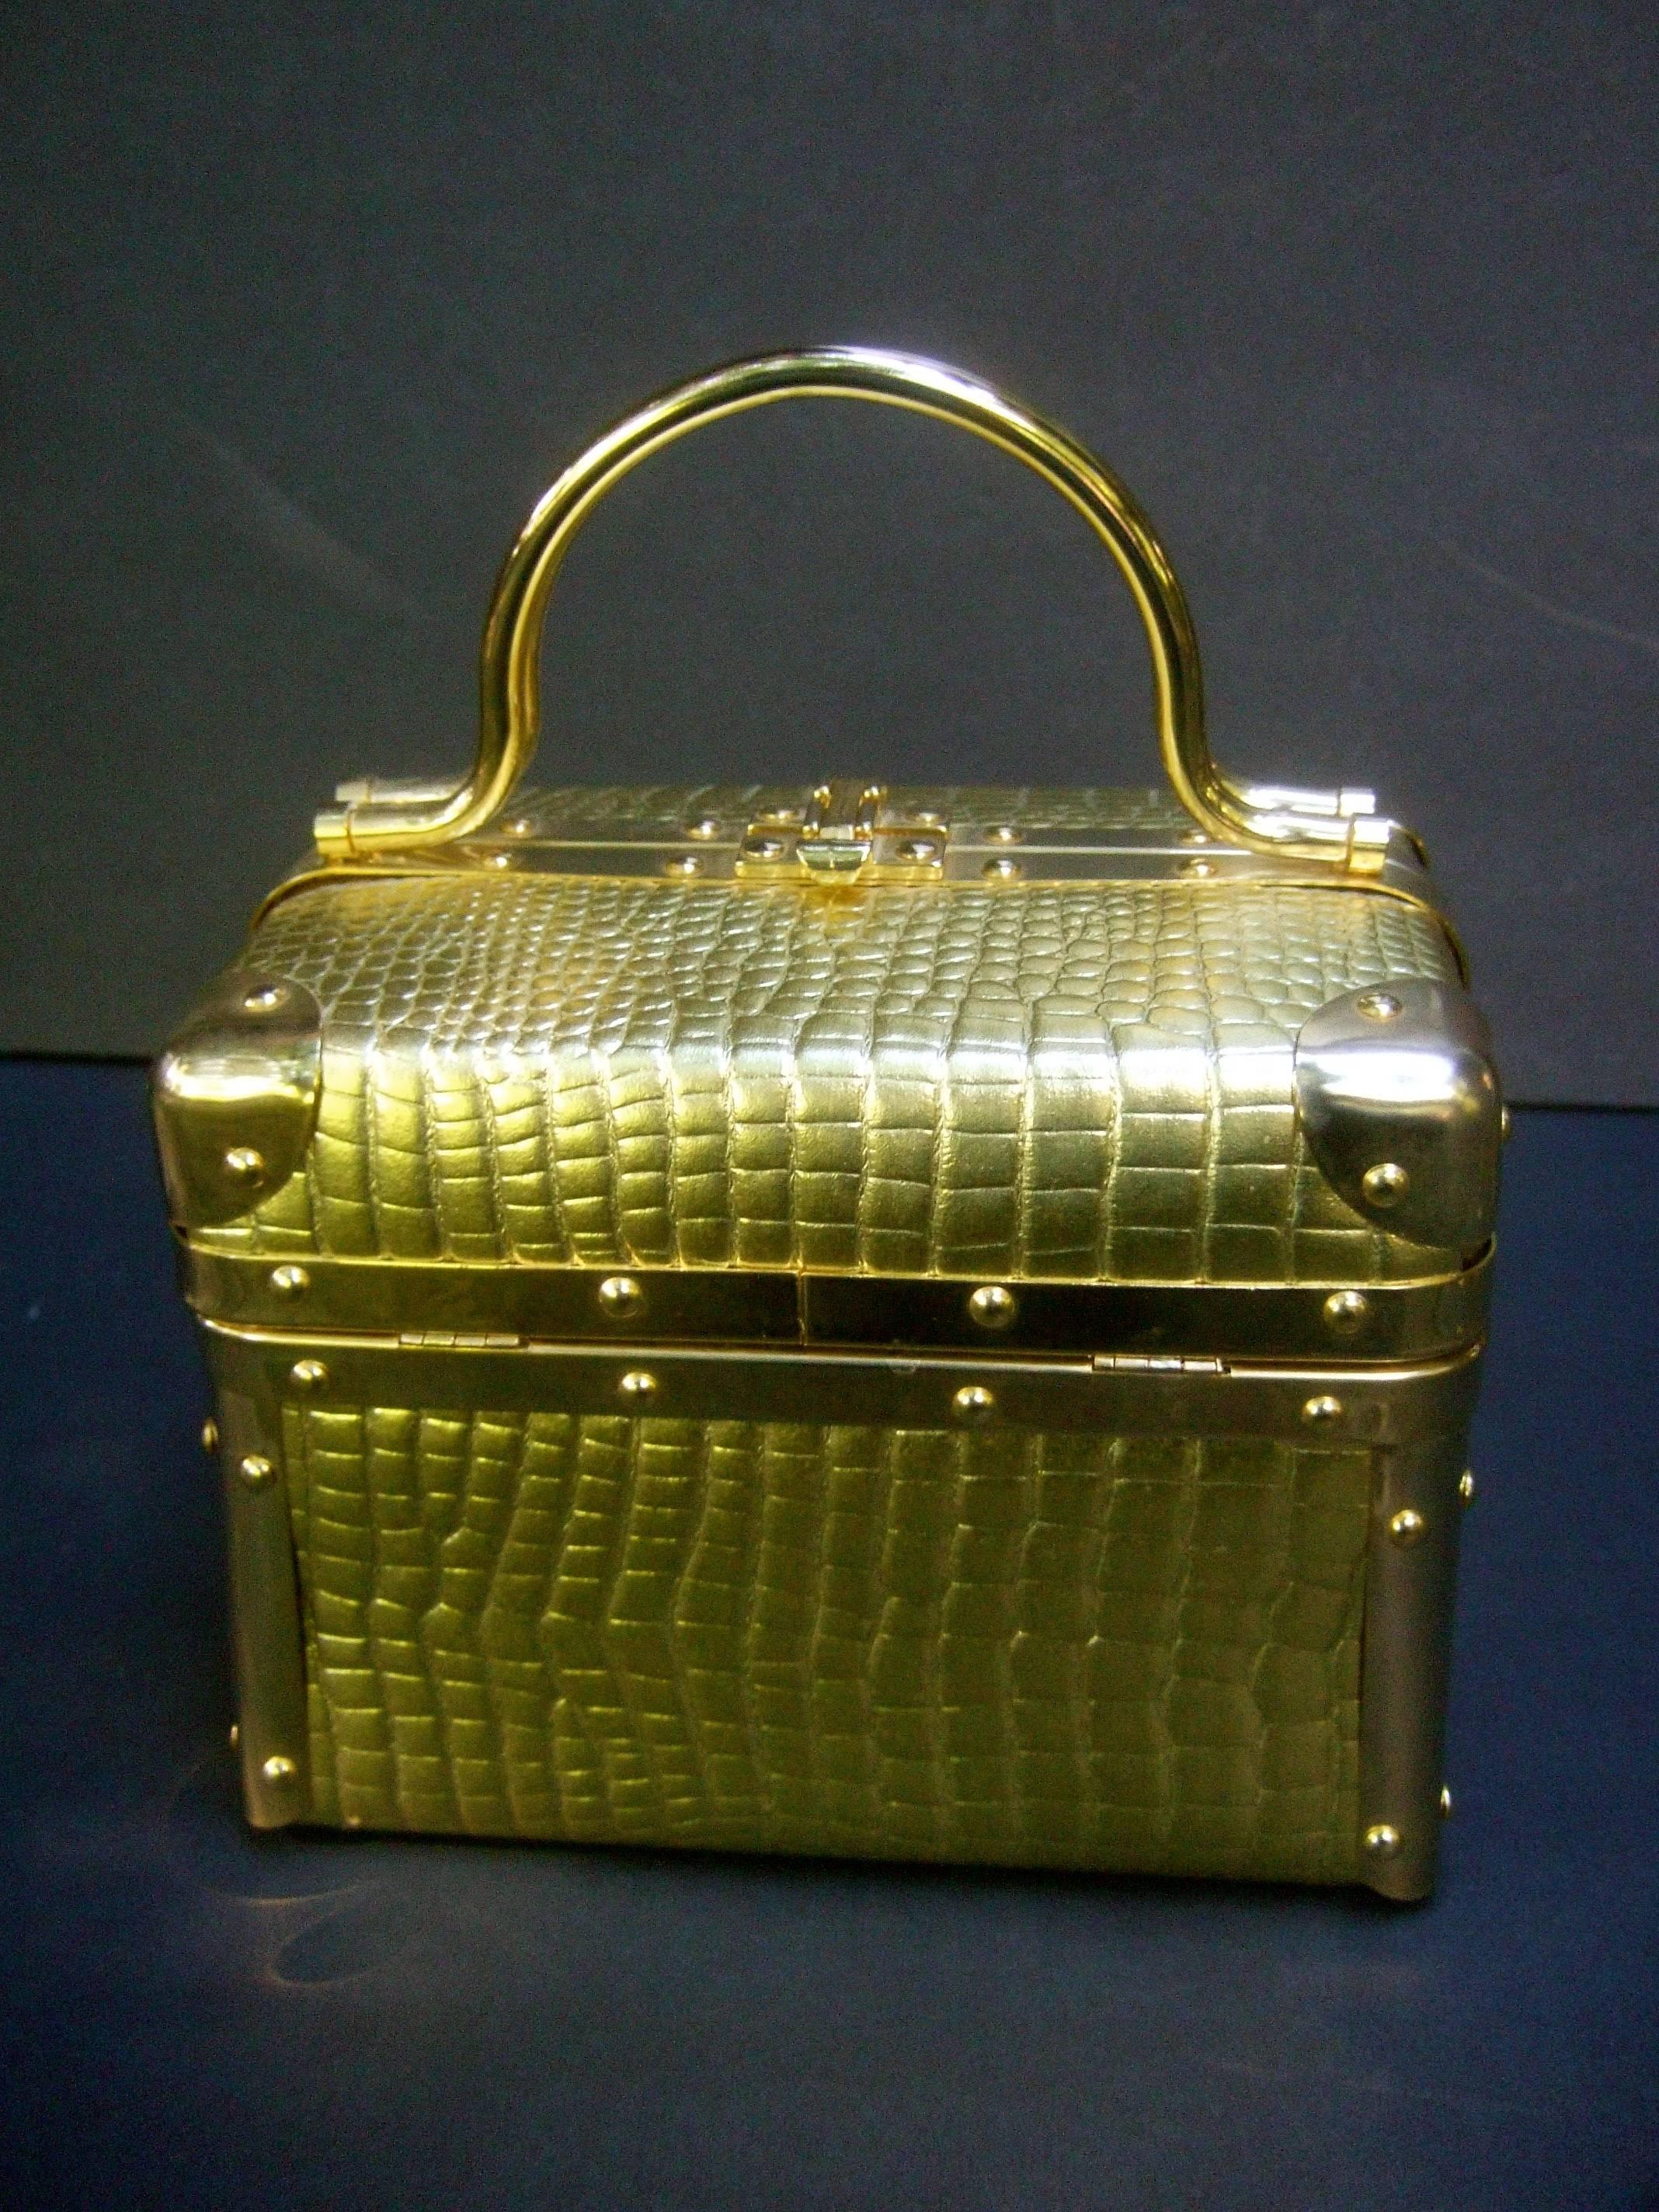 Borsa Bella Italy Goldmetallic geprägte Geldbörse c 1980s
Die stilvolle italienische Geldbörse ist mit leuchtenden
goldgeprägtes Vinyl, das Reptilienhaut nachahmt 

Entworfen mit einem Paar vergoldeter Metall-Drehgriffe 
Gerahmt mit schlichter,